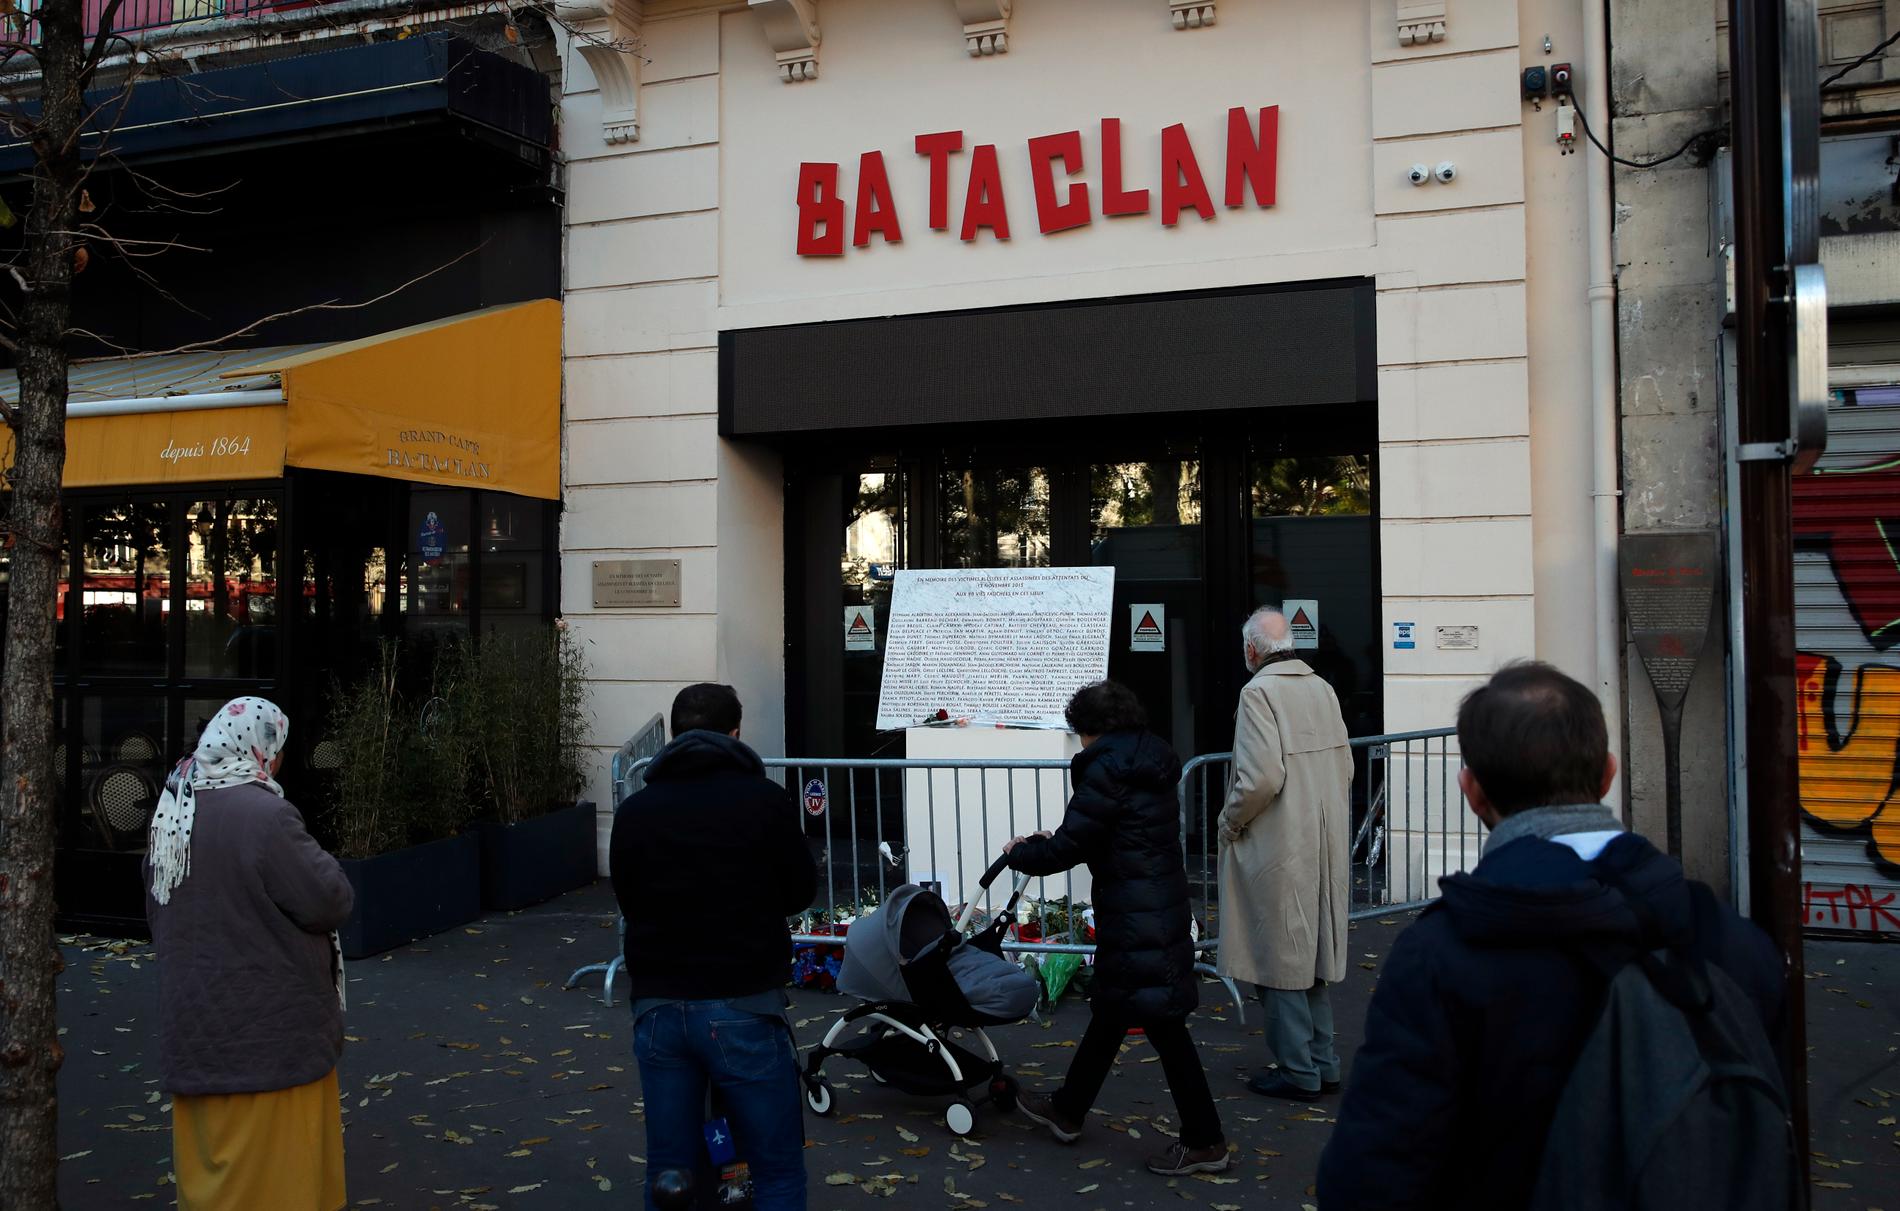 Frankrike har drabbats av flera uppmärksammade terrordåd de senaste åren. I november 2015 sköts 89 personer till döds i konsertlokalen Bataclan. På årsdagen förra året samlades flera utanför lokalen för att hedra offren.